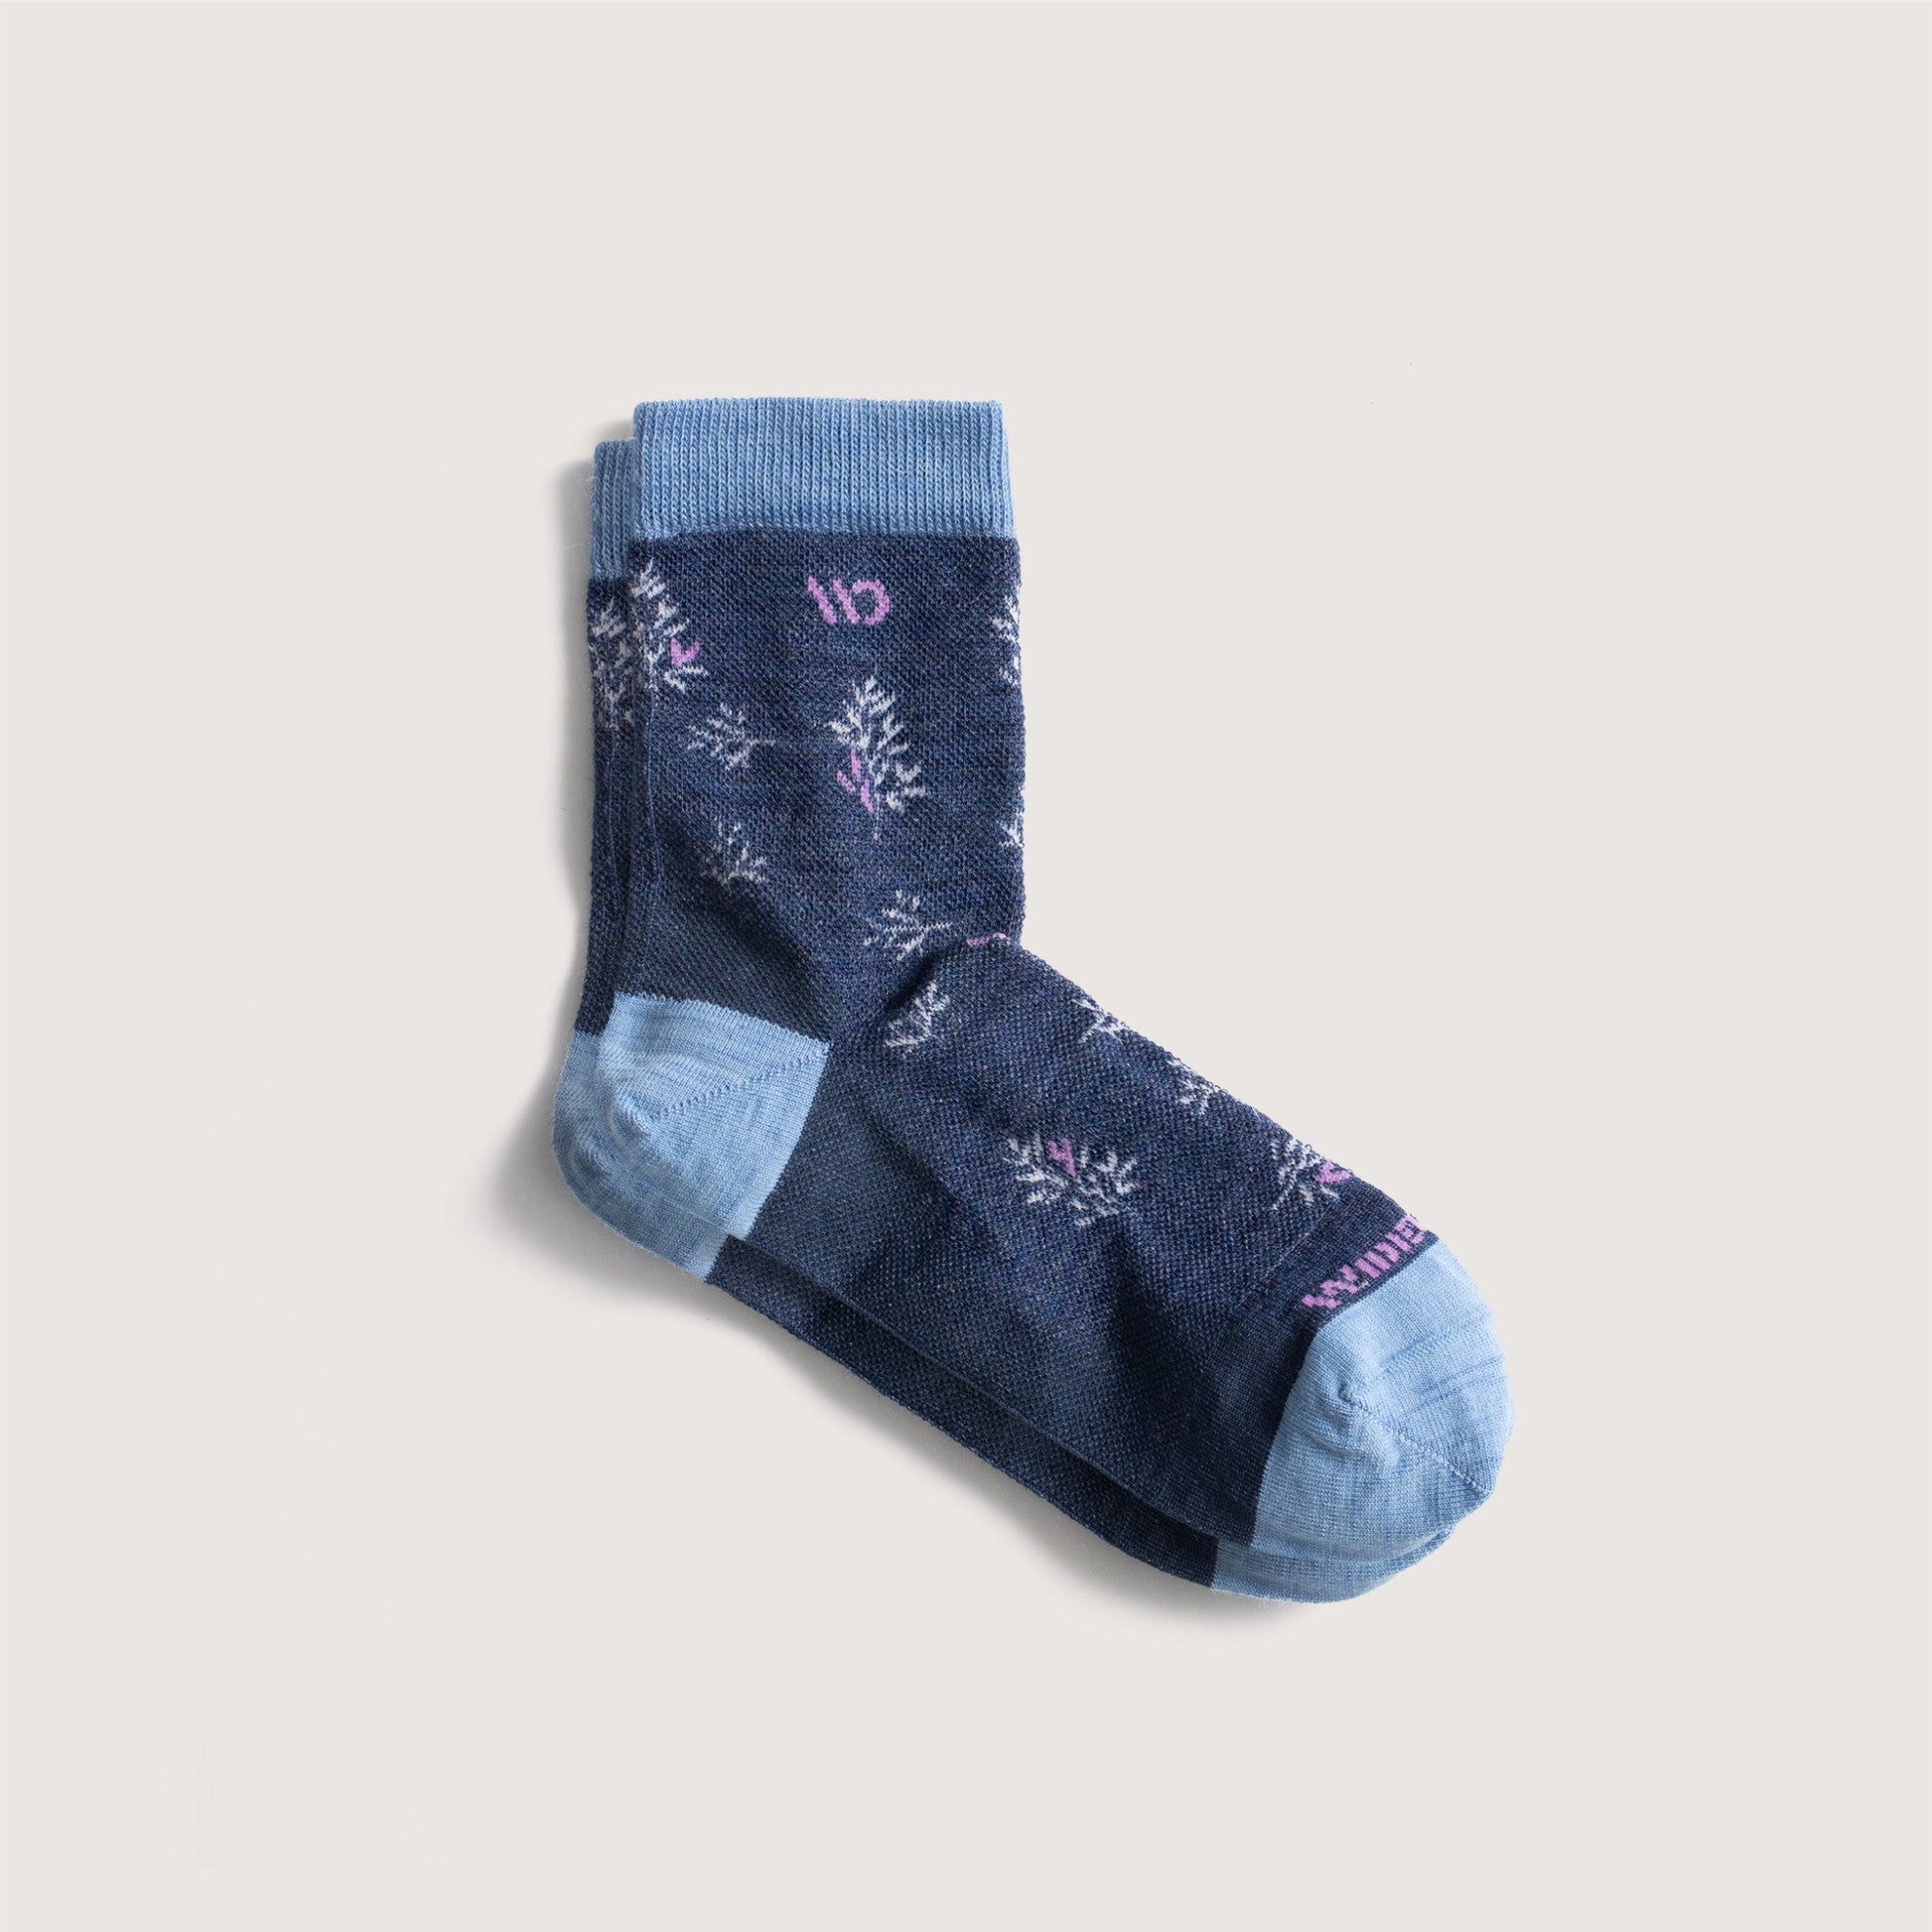 Flat socks, featuring light blue heel/toe, denim body, lavender logo and white detail --Light Gray/Denim